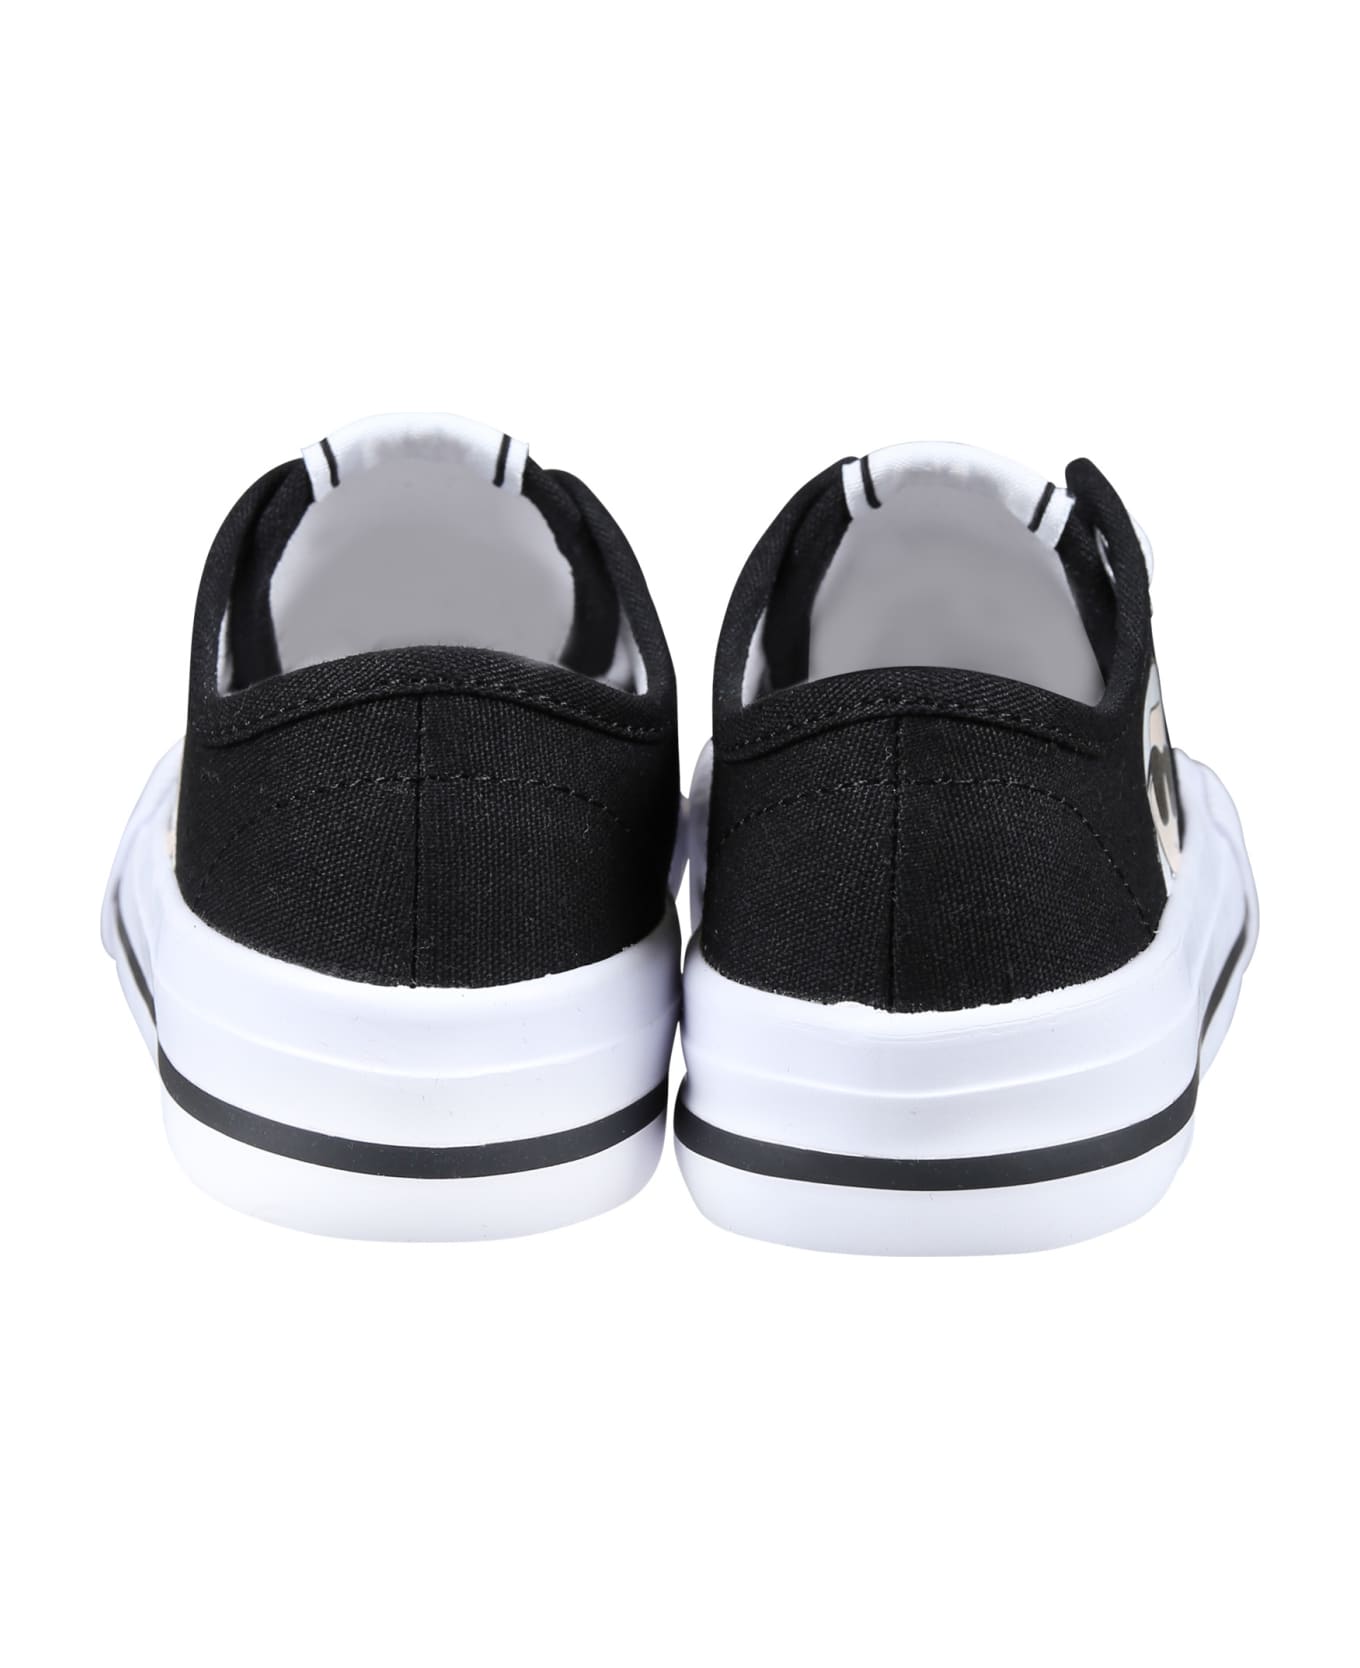 Karl Lagerfeld Kids Black Sneakers For Kids With Karl Print - Black